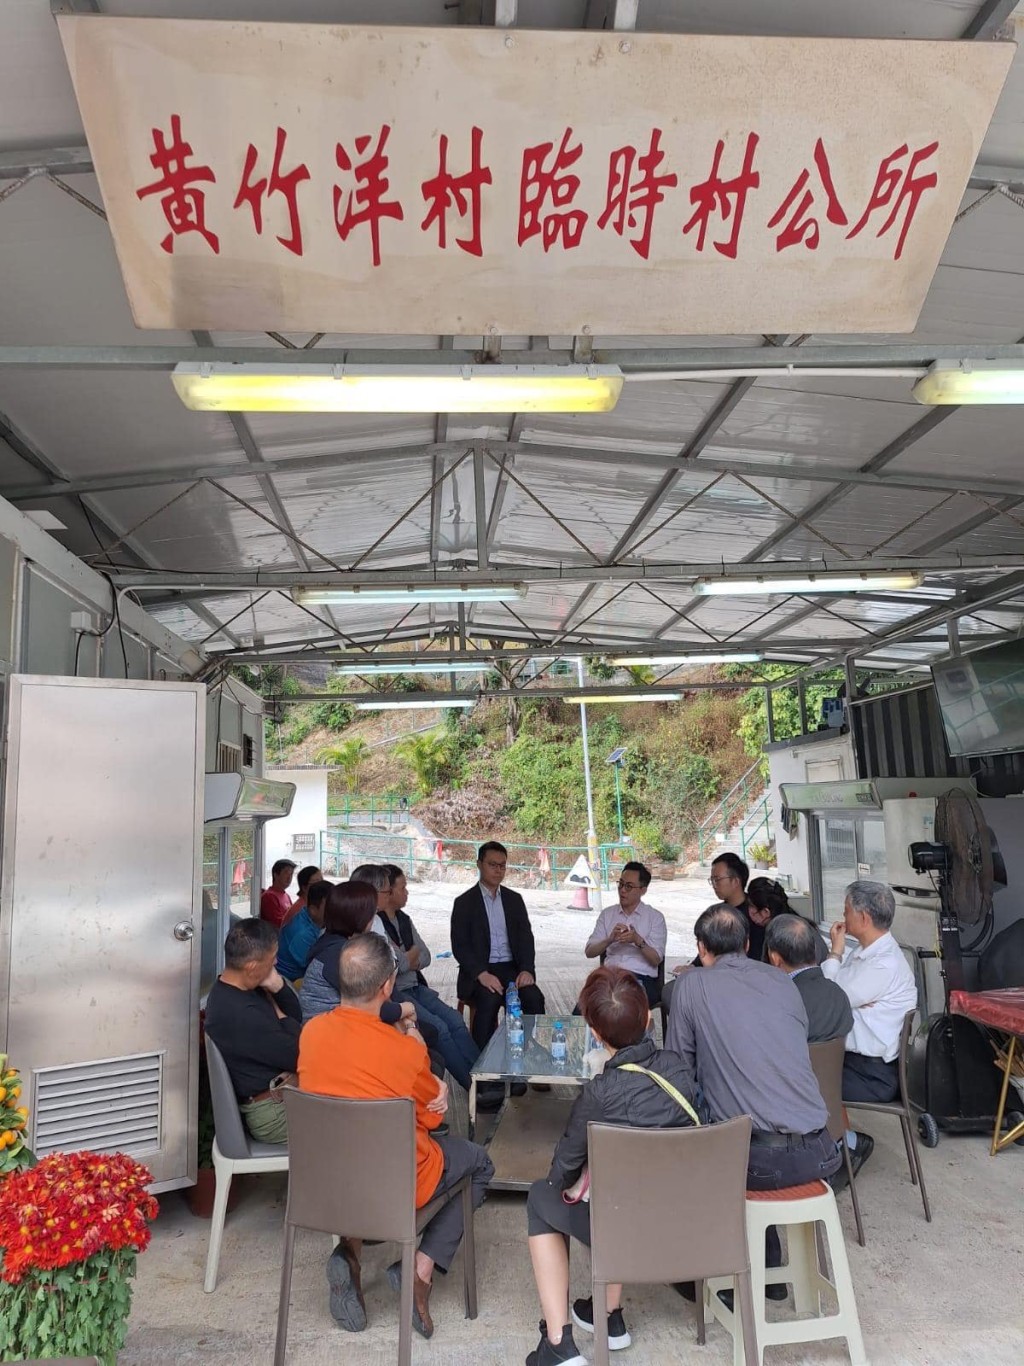 沙田民政專員、運輸署代表、小巴營運商在黃竹洋村內協商解決辦法。(民政事務總署fb)